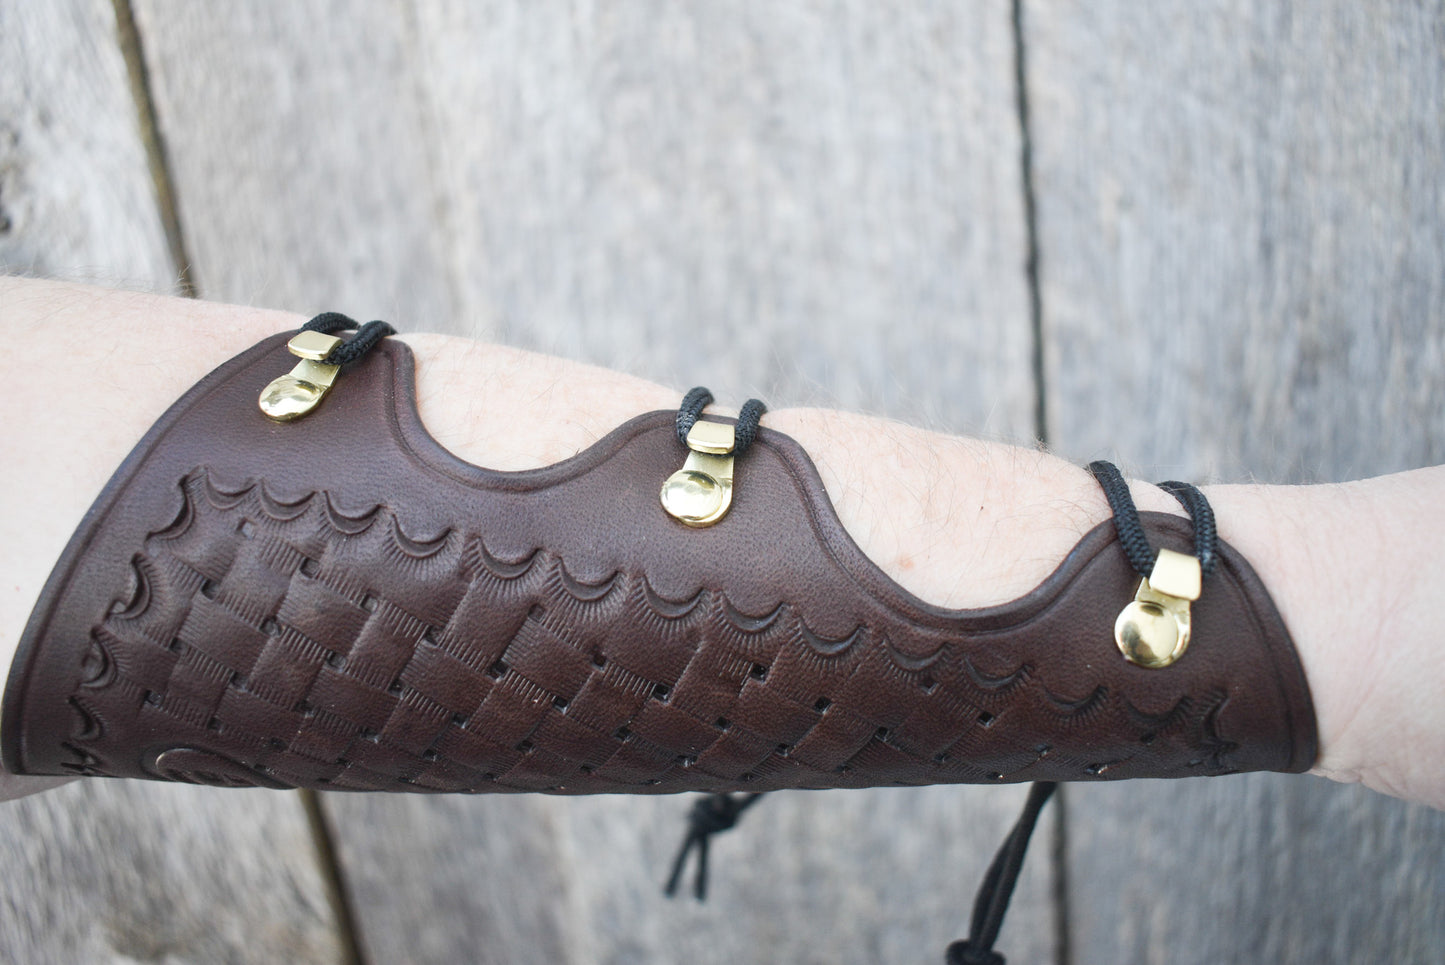 Armschutz aus Leder, Bogenschießen-Armschutz, für traditionelles Bogenschießen, extra lang, mit spitzen Enden und Korbgeflecht-Besatz